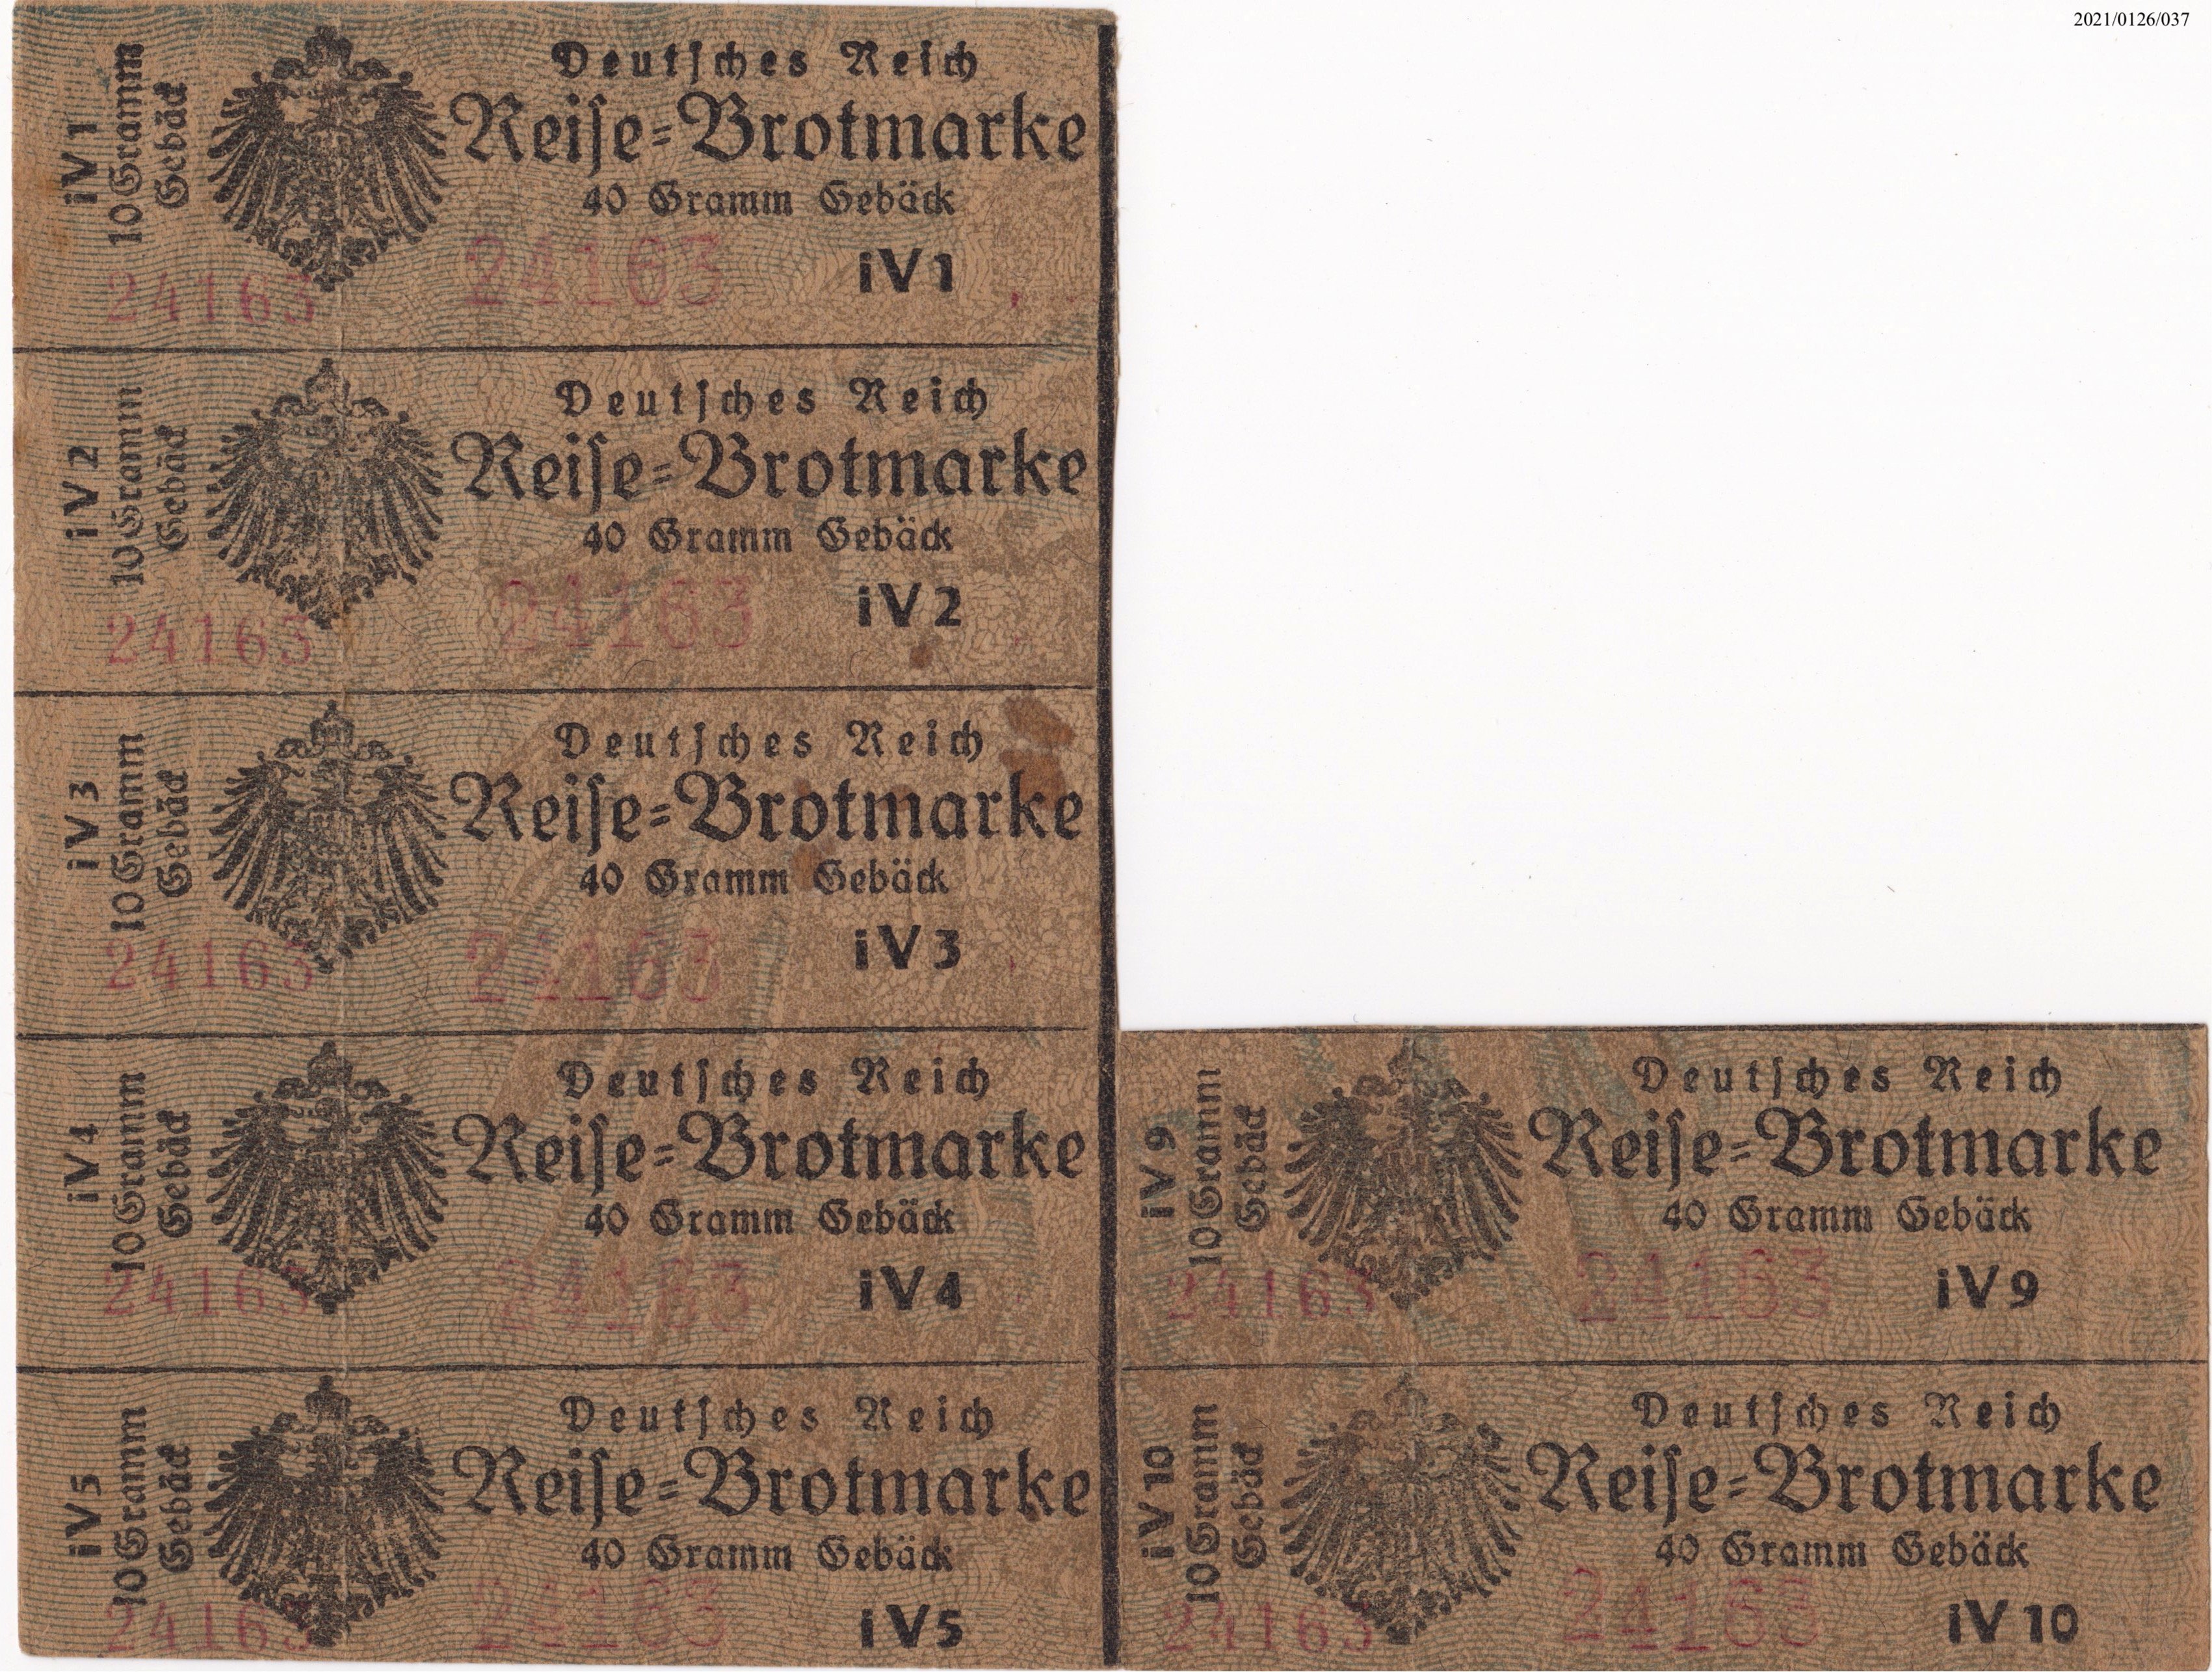 1918 selten! 40 Gramm Gebäck Deutsches Reich Reisebrotmarke für jeweils 10 